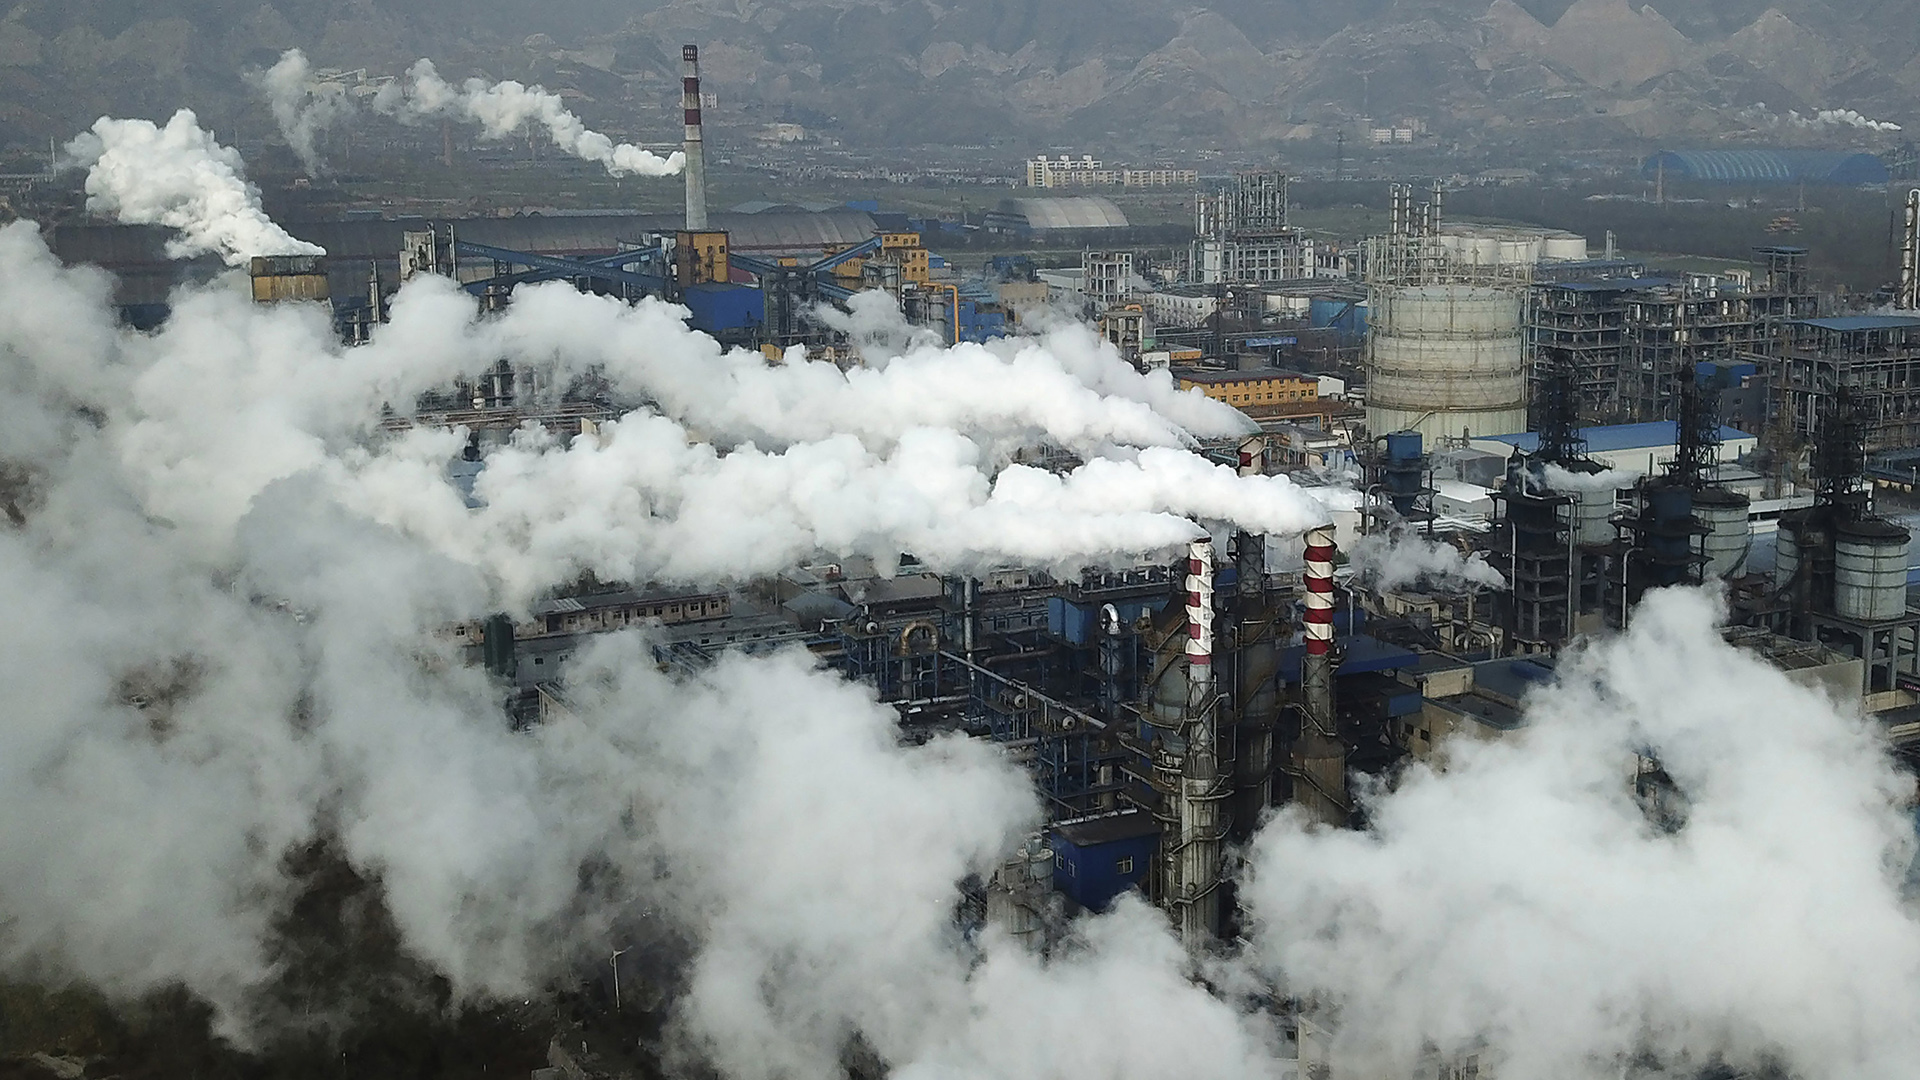 Rauchwolken steigen über dem Kohlekraftwerk in Hejin in der zentralchinesischen Provinz Shanxi auf. (Archivfoto vom 28.11. 2019) | AP